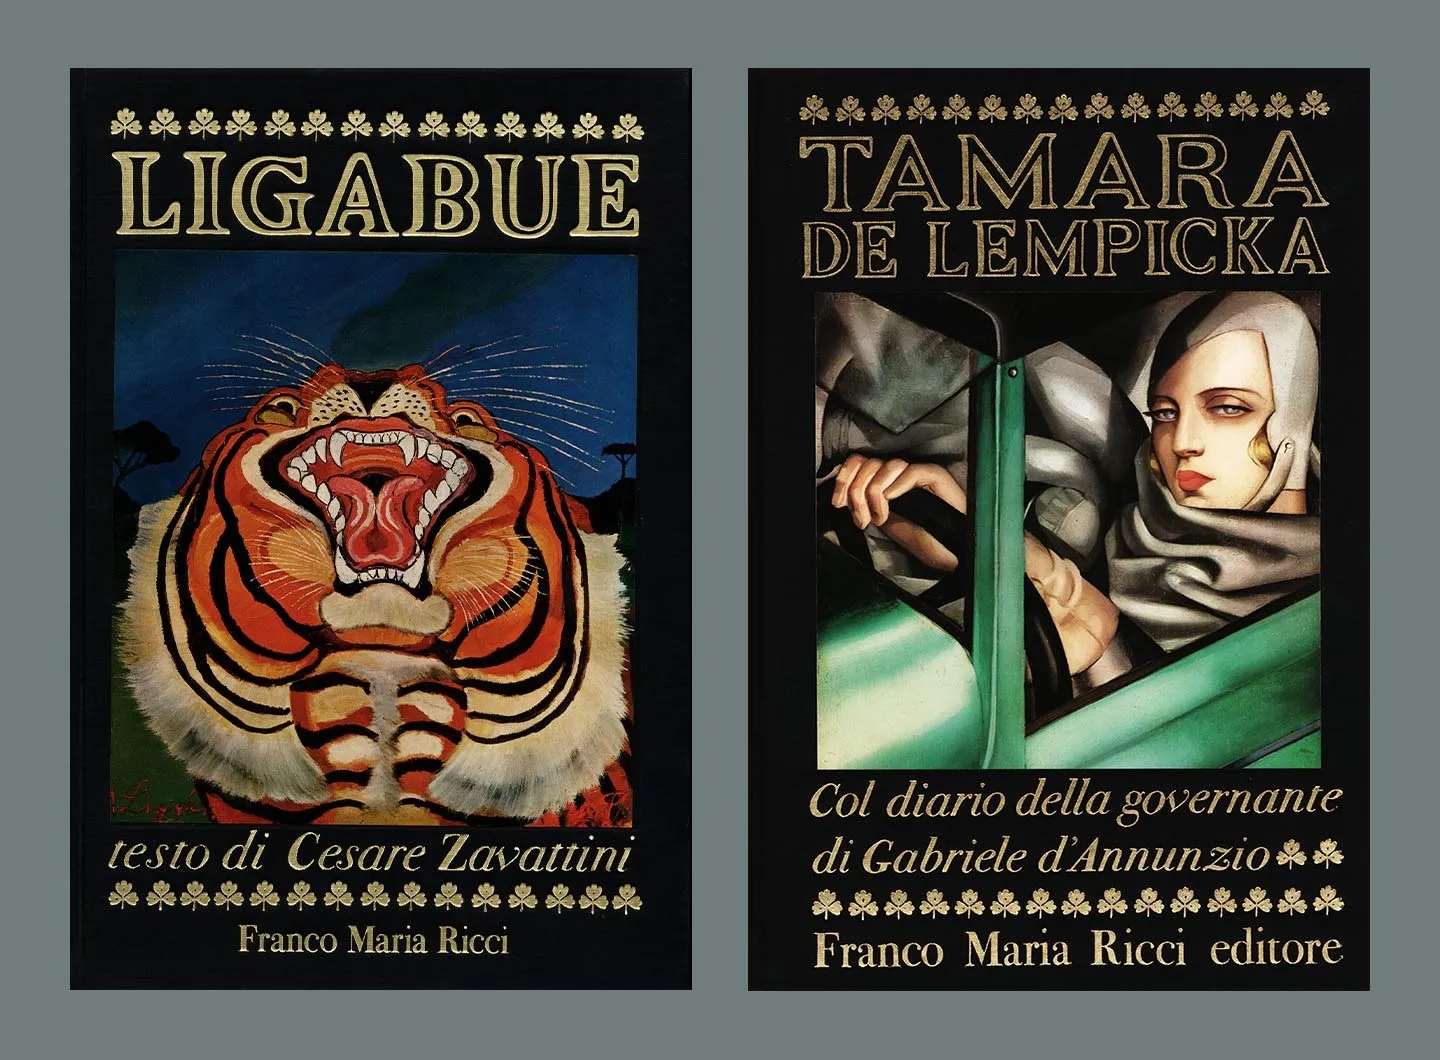 Le copertine dei volumi Ligabue e Tamara de Lempicka